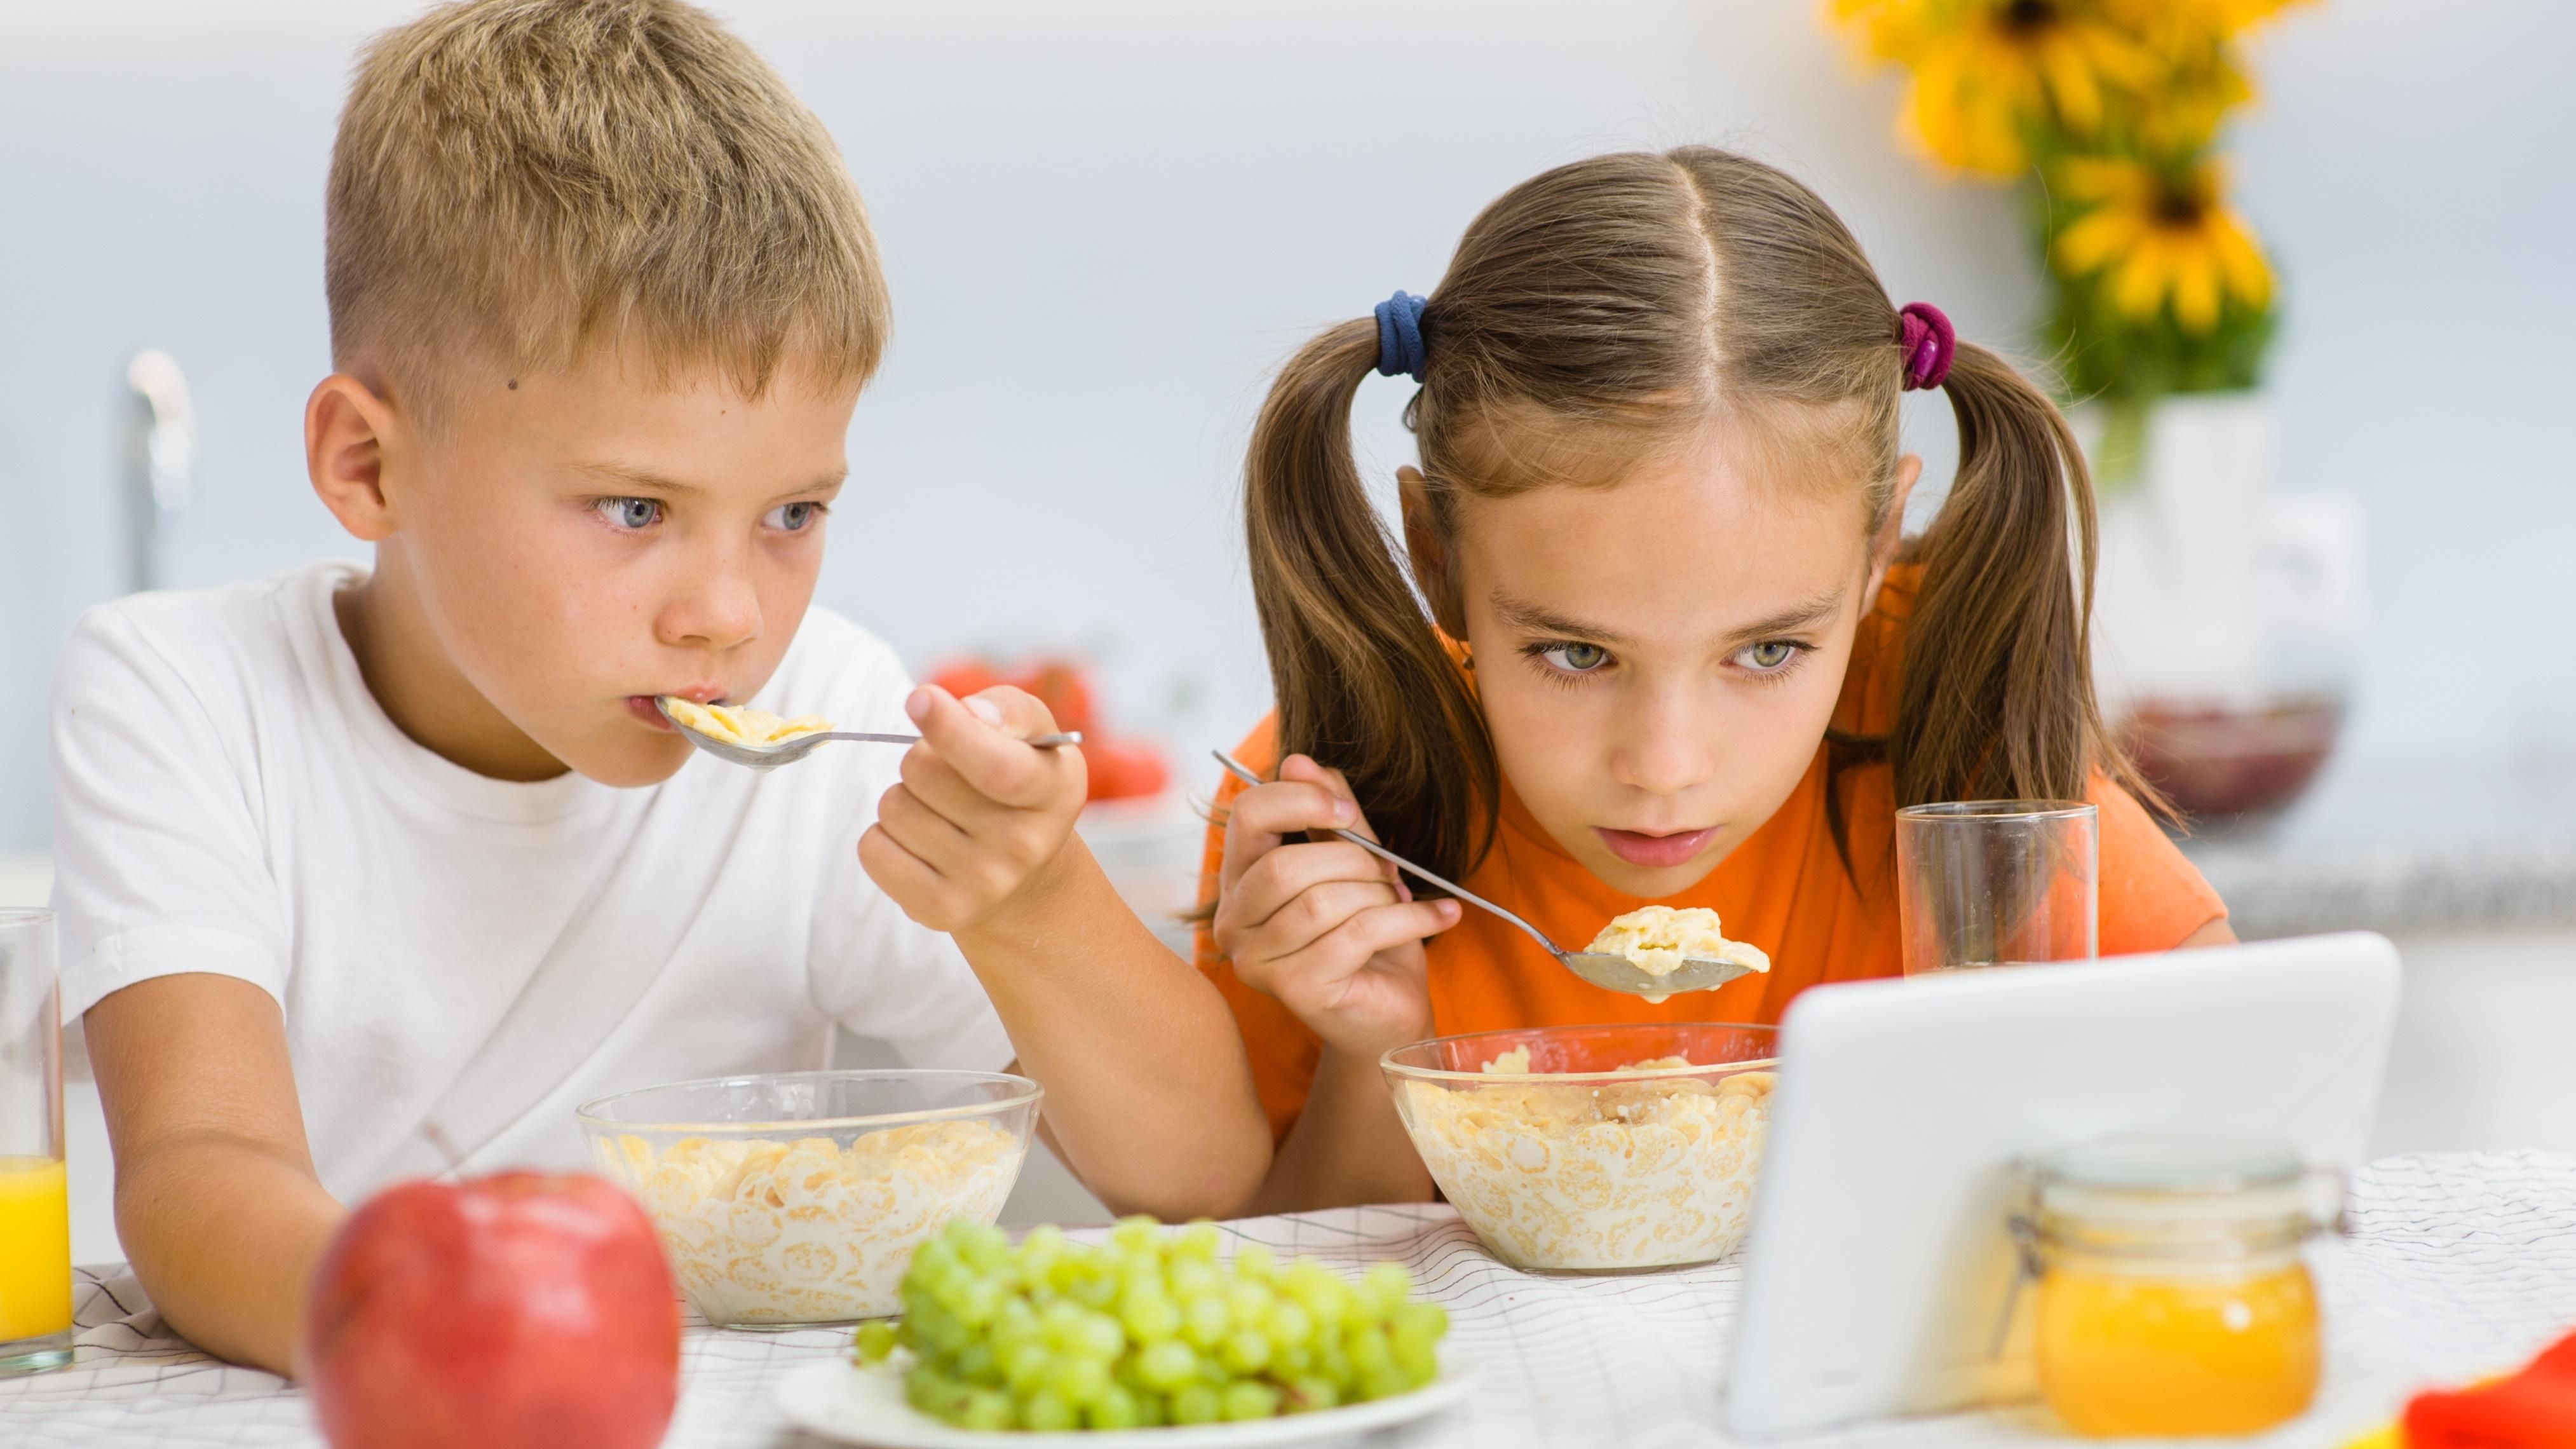 Перегляд мультиків під час їжі: які проблеми можуть з'явитися у дітей